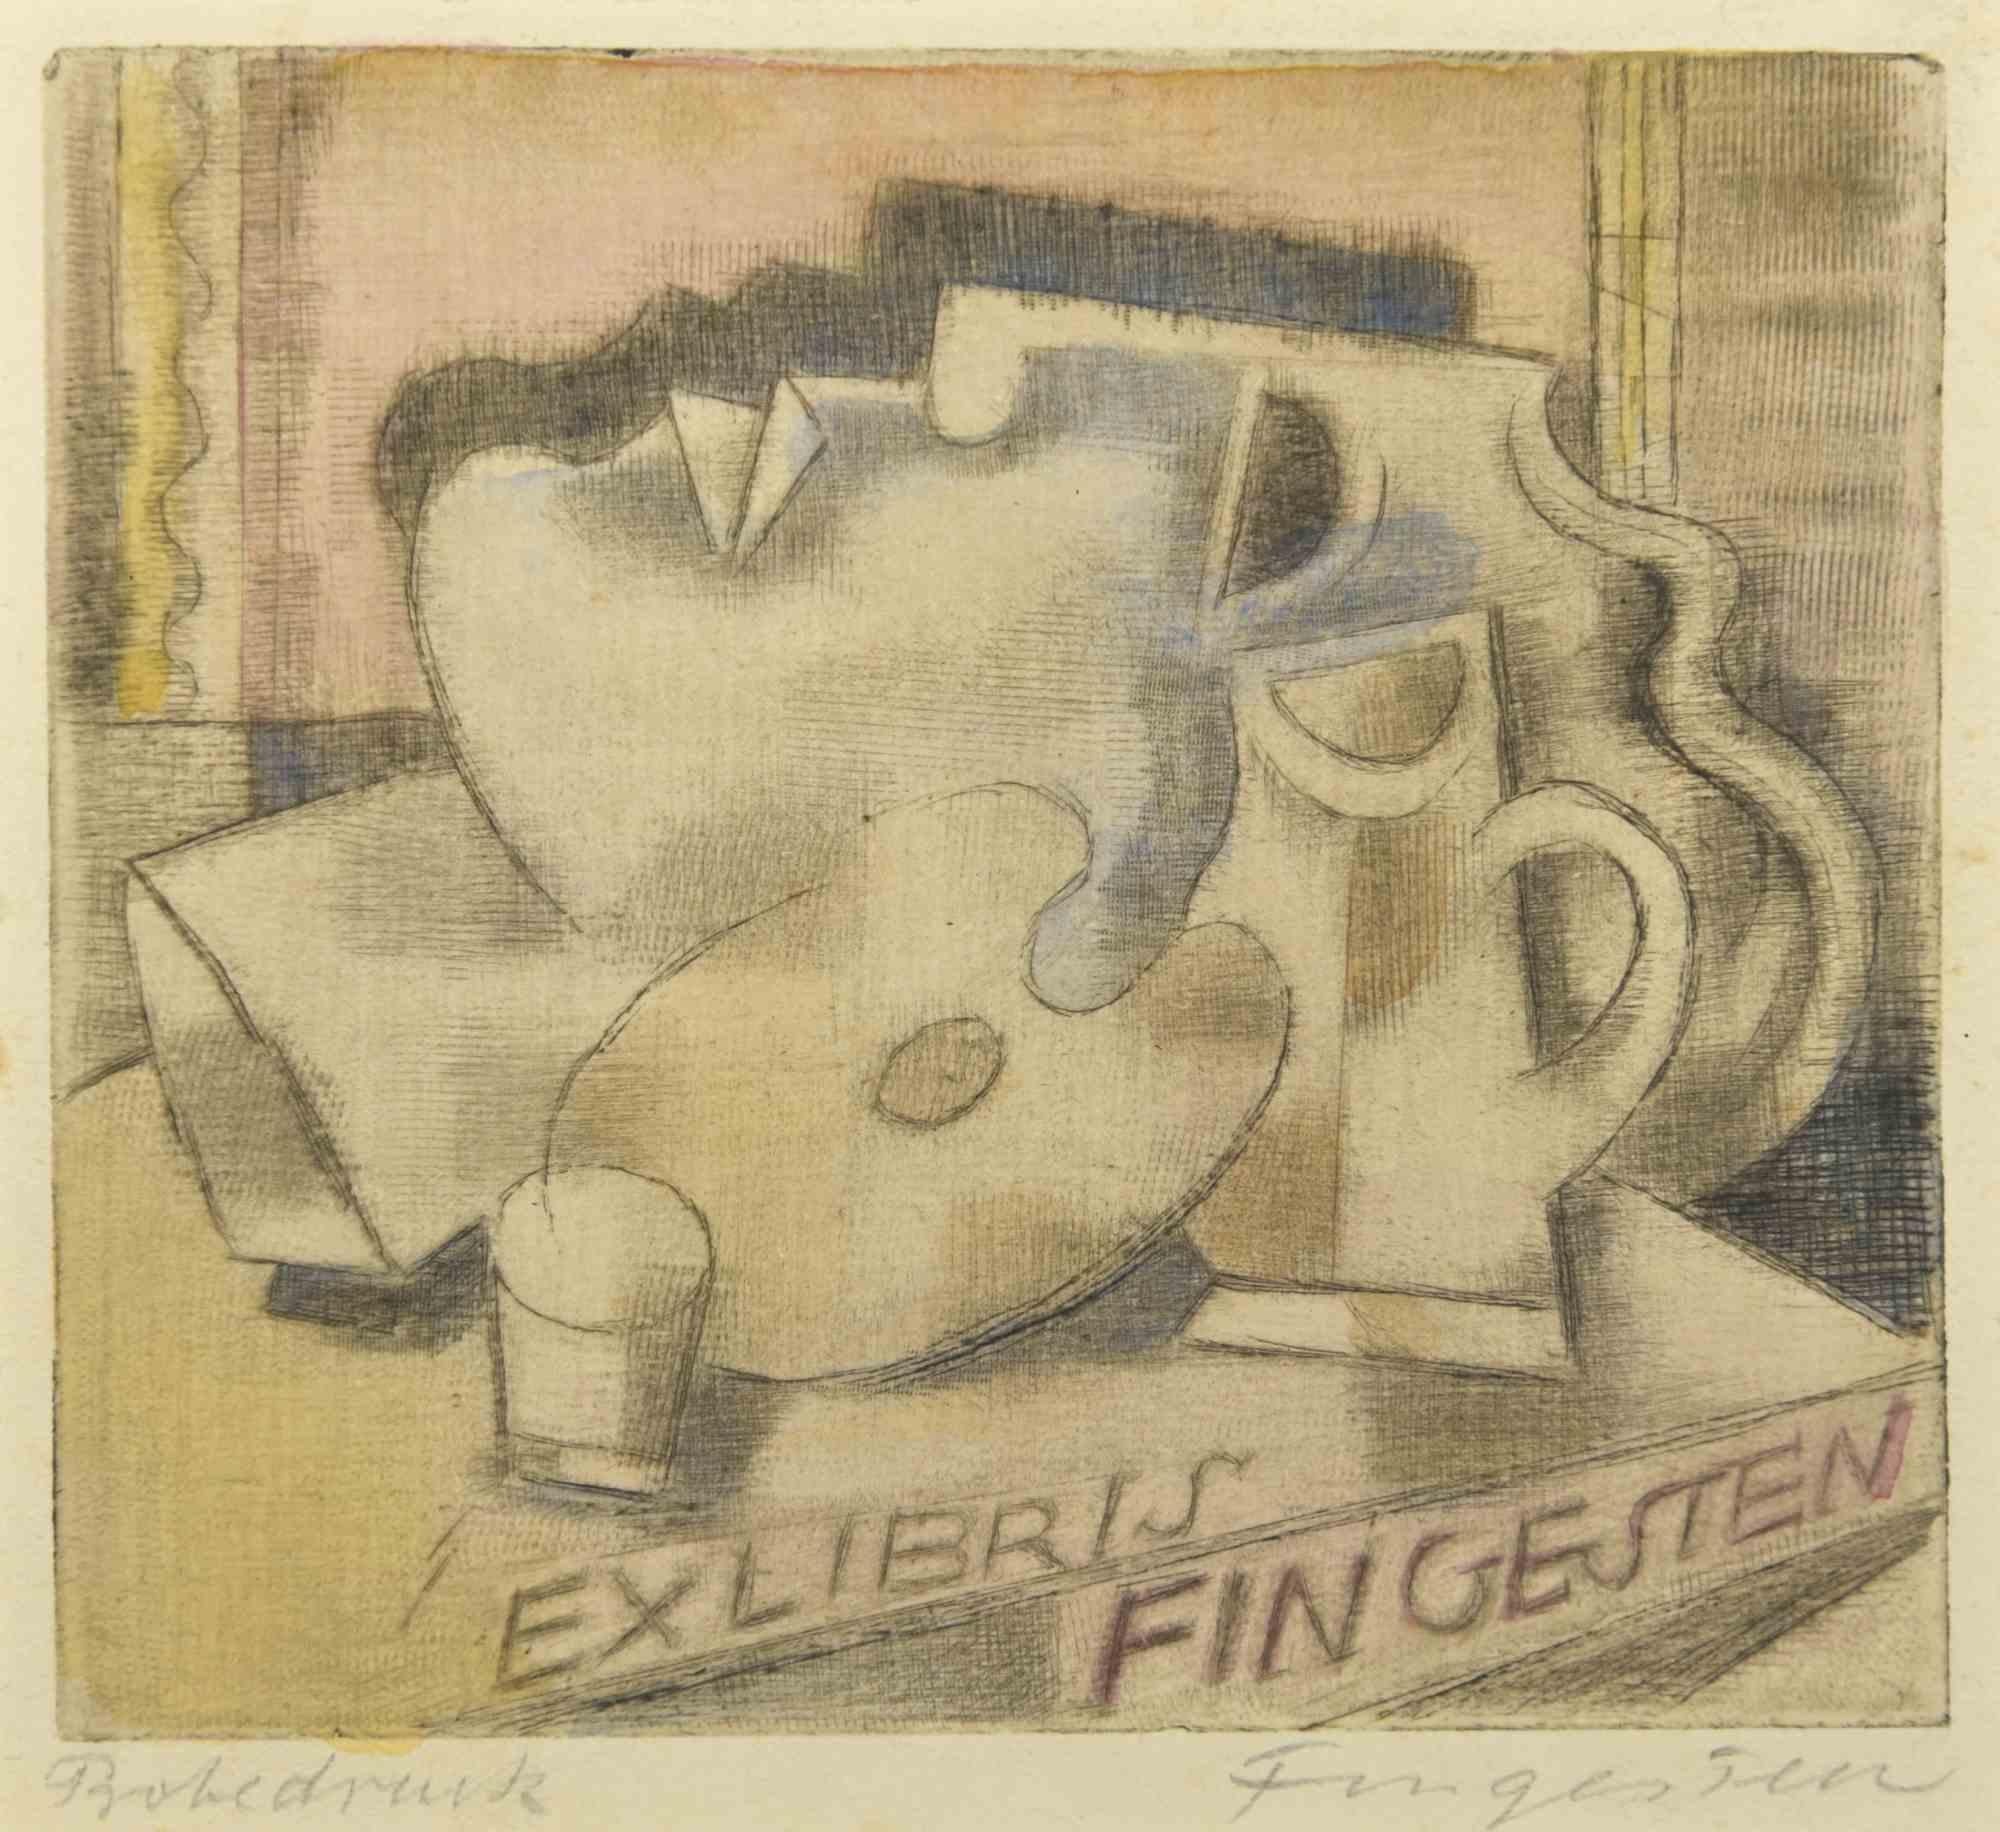 Ex Libris - Fingesten ist eine farbige Radierung erstellt von  Michel Fingesten.

Handsigniert am unteren rechten Rand.

Sehr guter Zustand.

Michel Fingesten (1884 - 1943) war ein tschechischer Maler und Graveur jüdischer Herkunft. Er gilt als